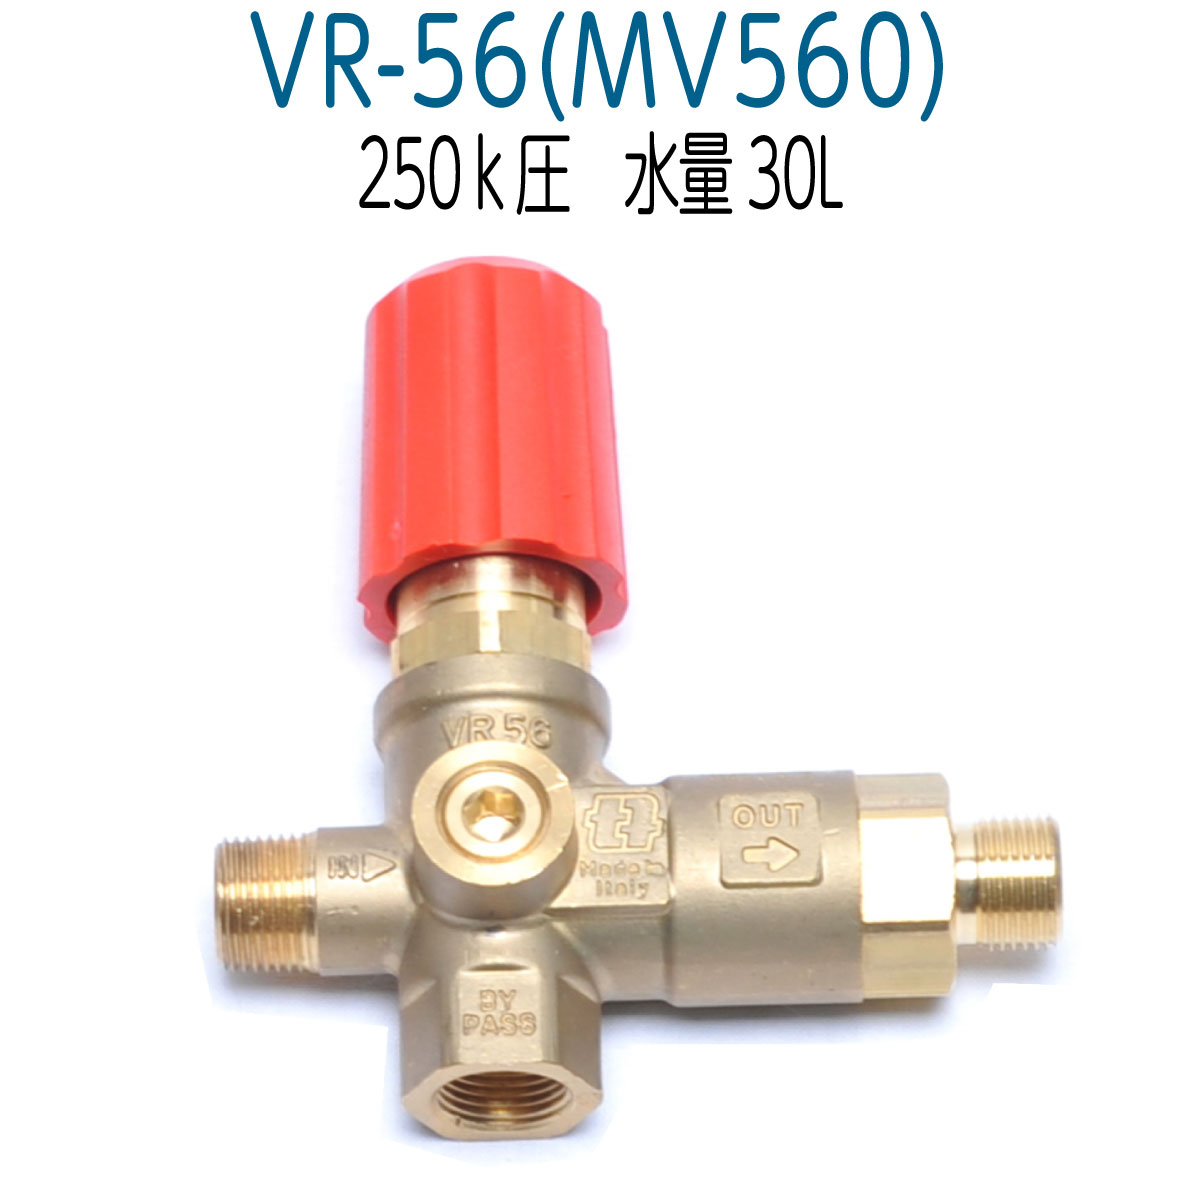 VR-56 (MV560) 高圧洗浄機アンローダバルブ 圧力計取付口付 精和産業